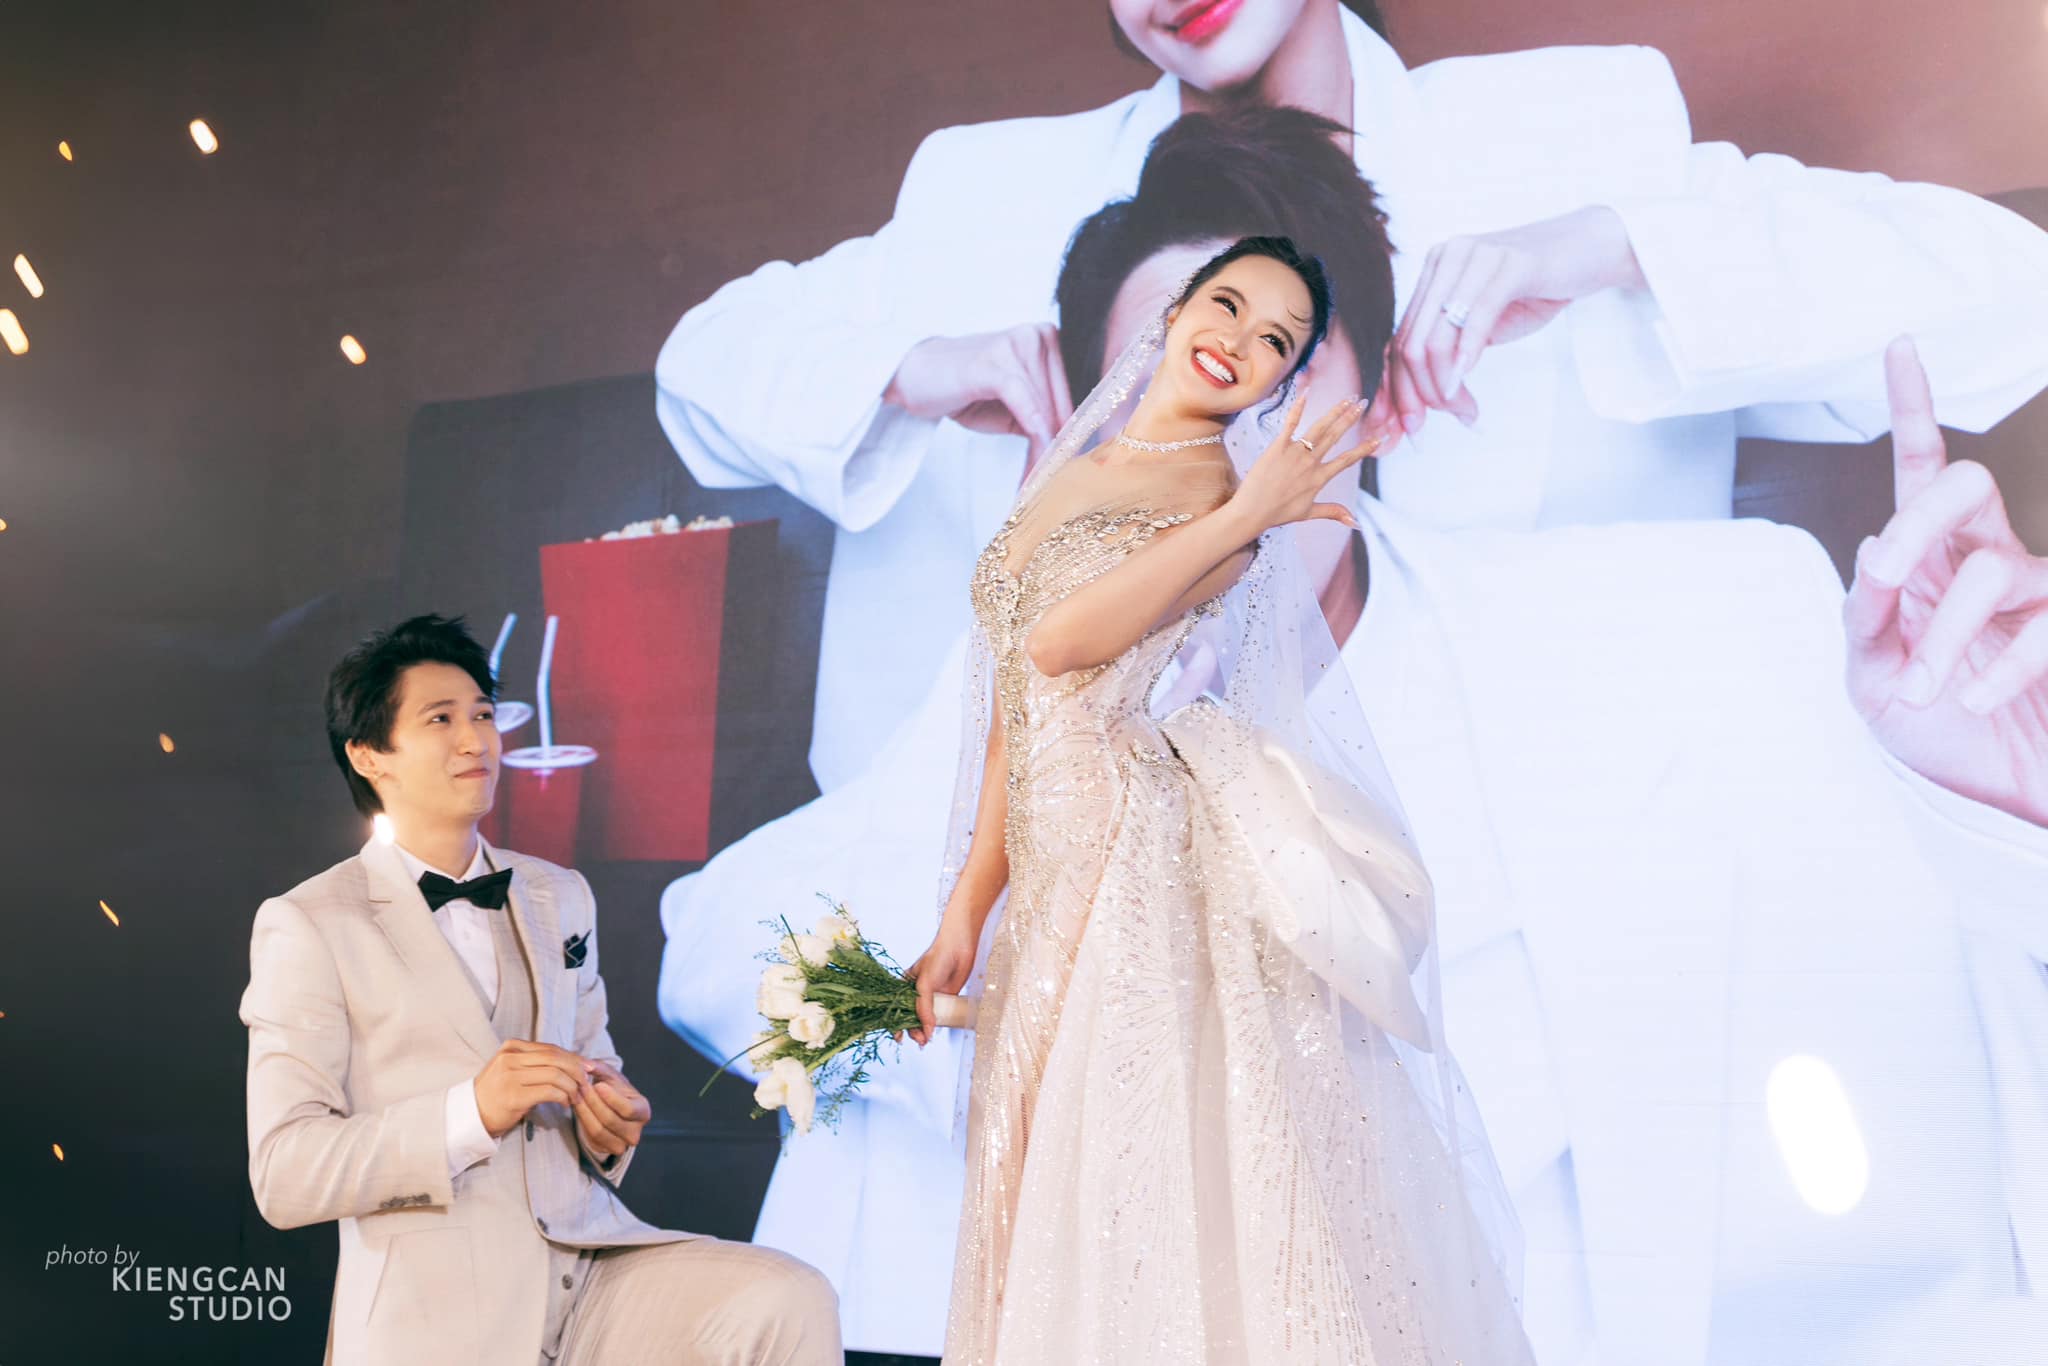 Hoa hậu Kiều Ngân bật khóc khi chồng quỳ gối cầu hôn trong lễ cưới- Ảnh 5.